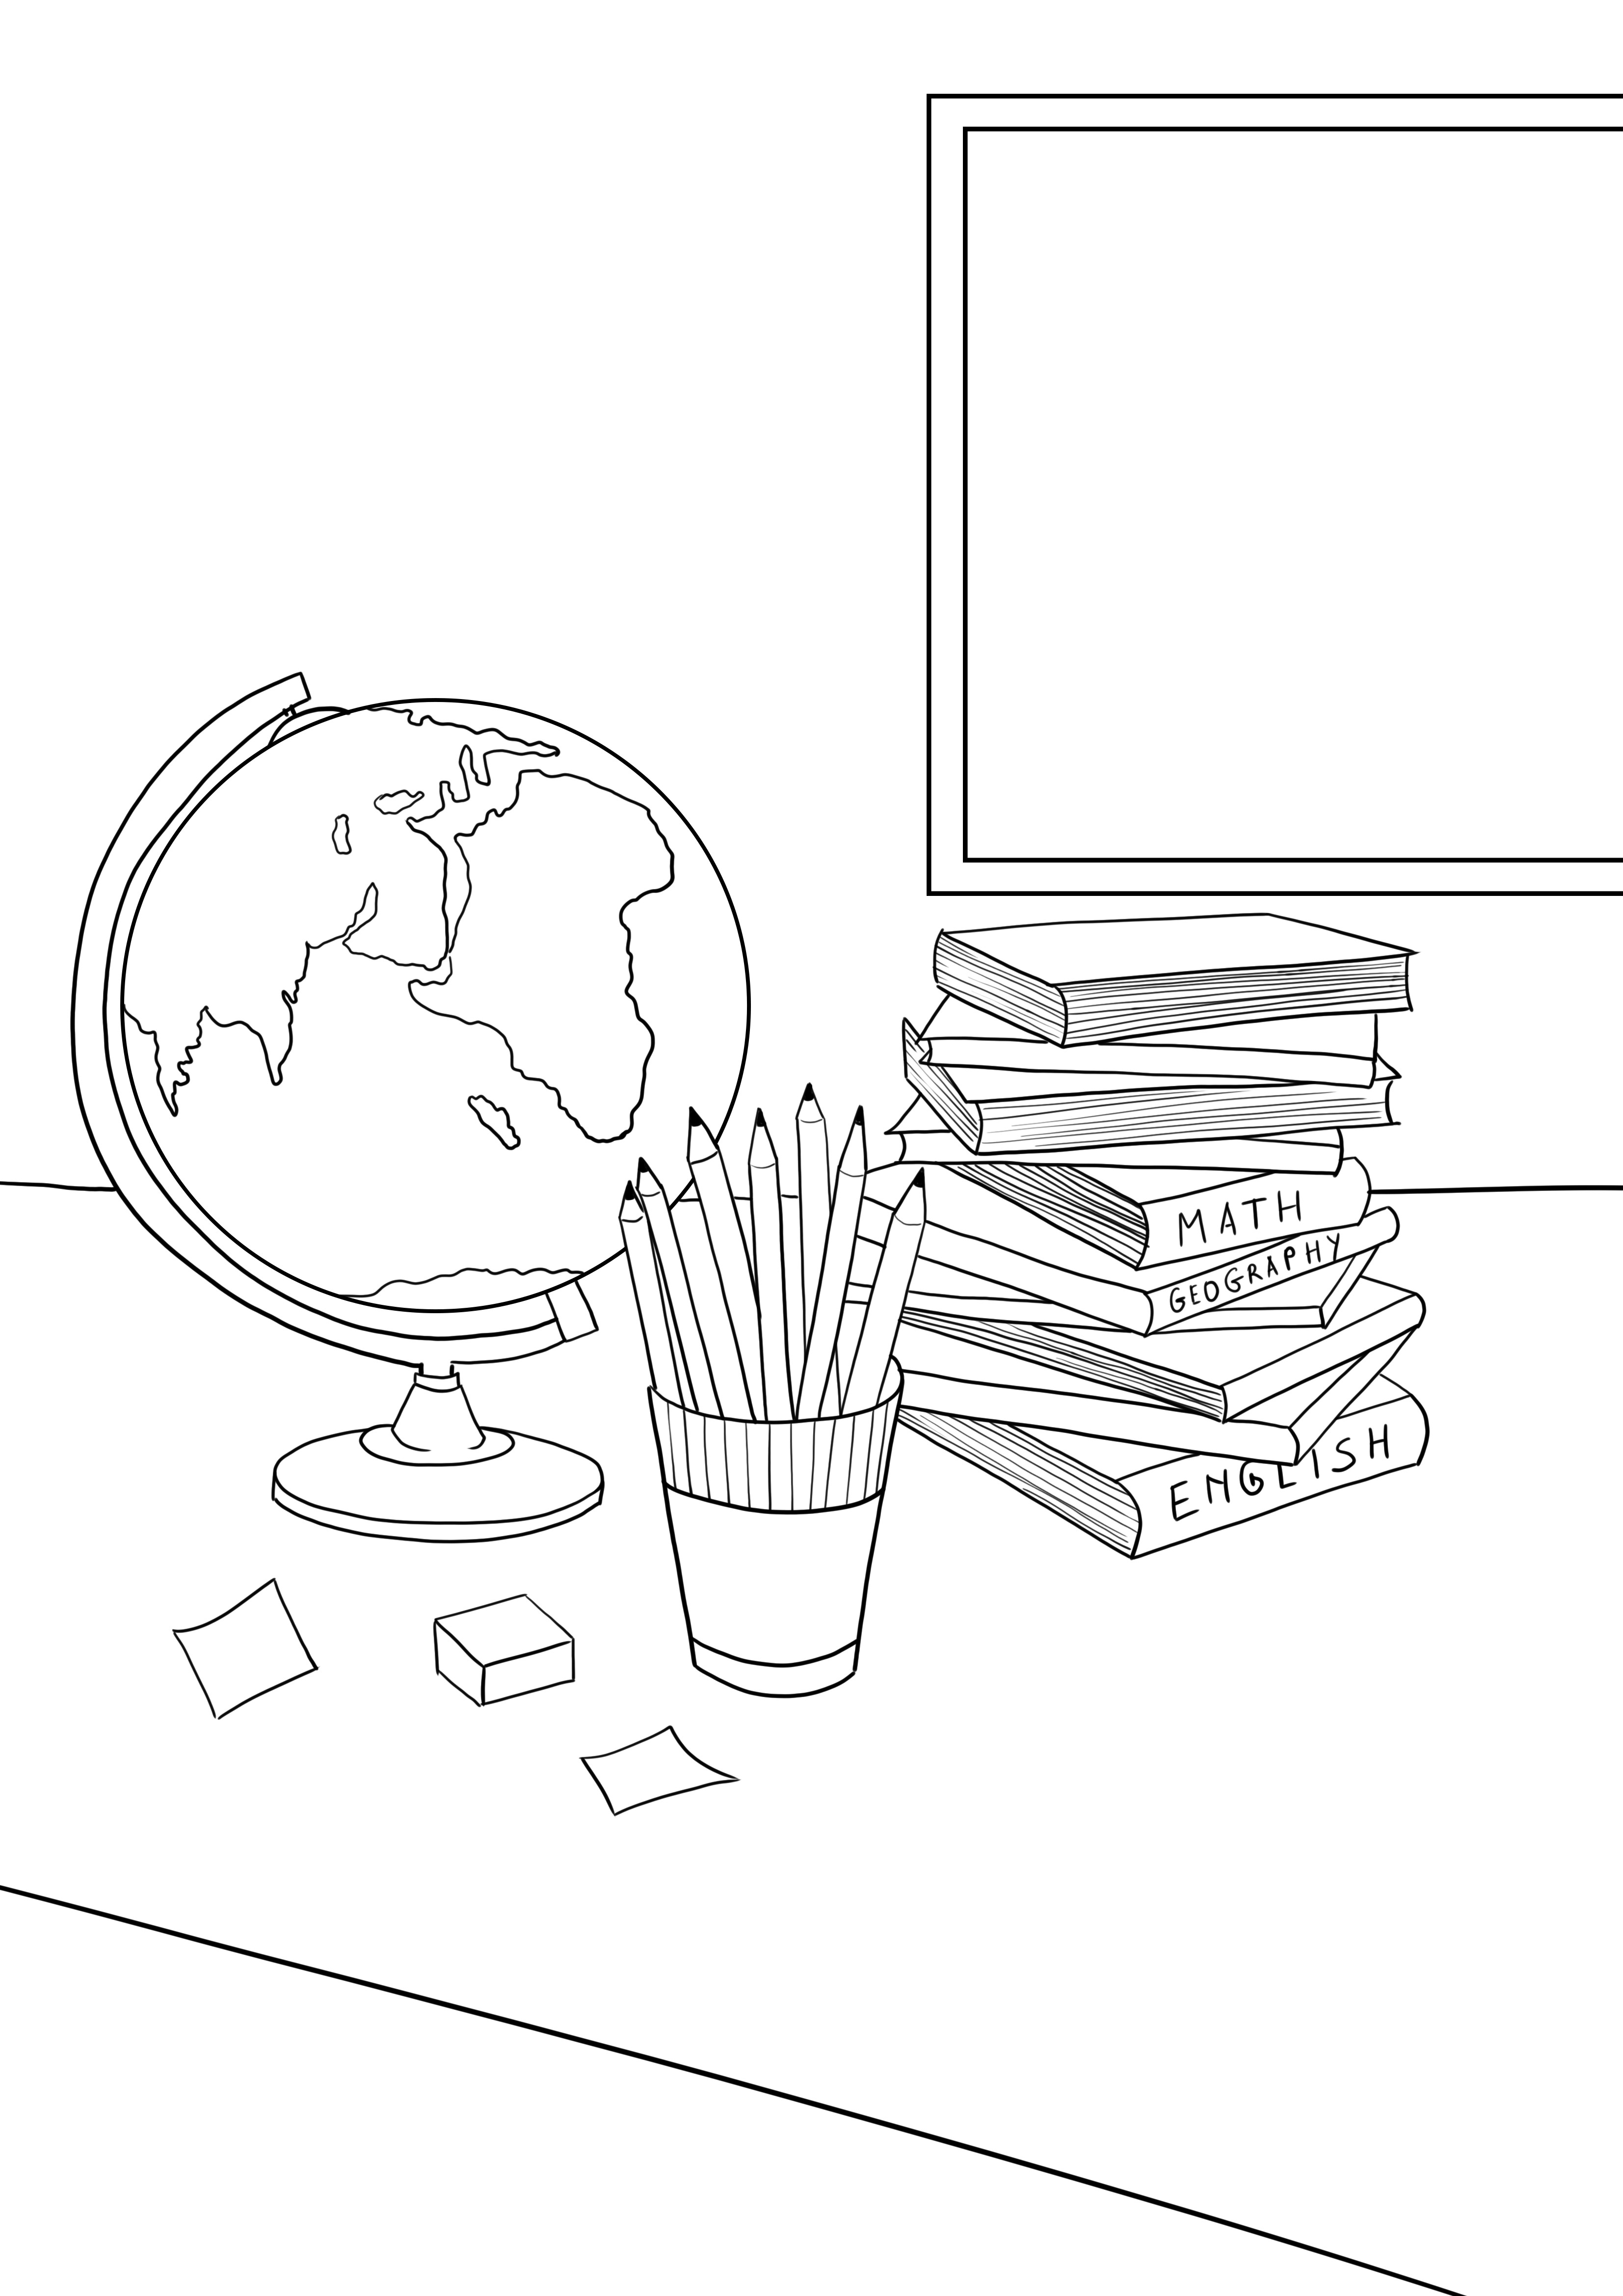 Cărți școlare-creioane-glob pentru imprimare gratuită pentru copii de toate vârstele